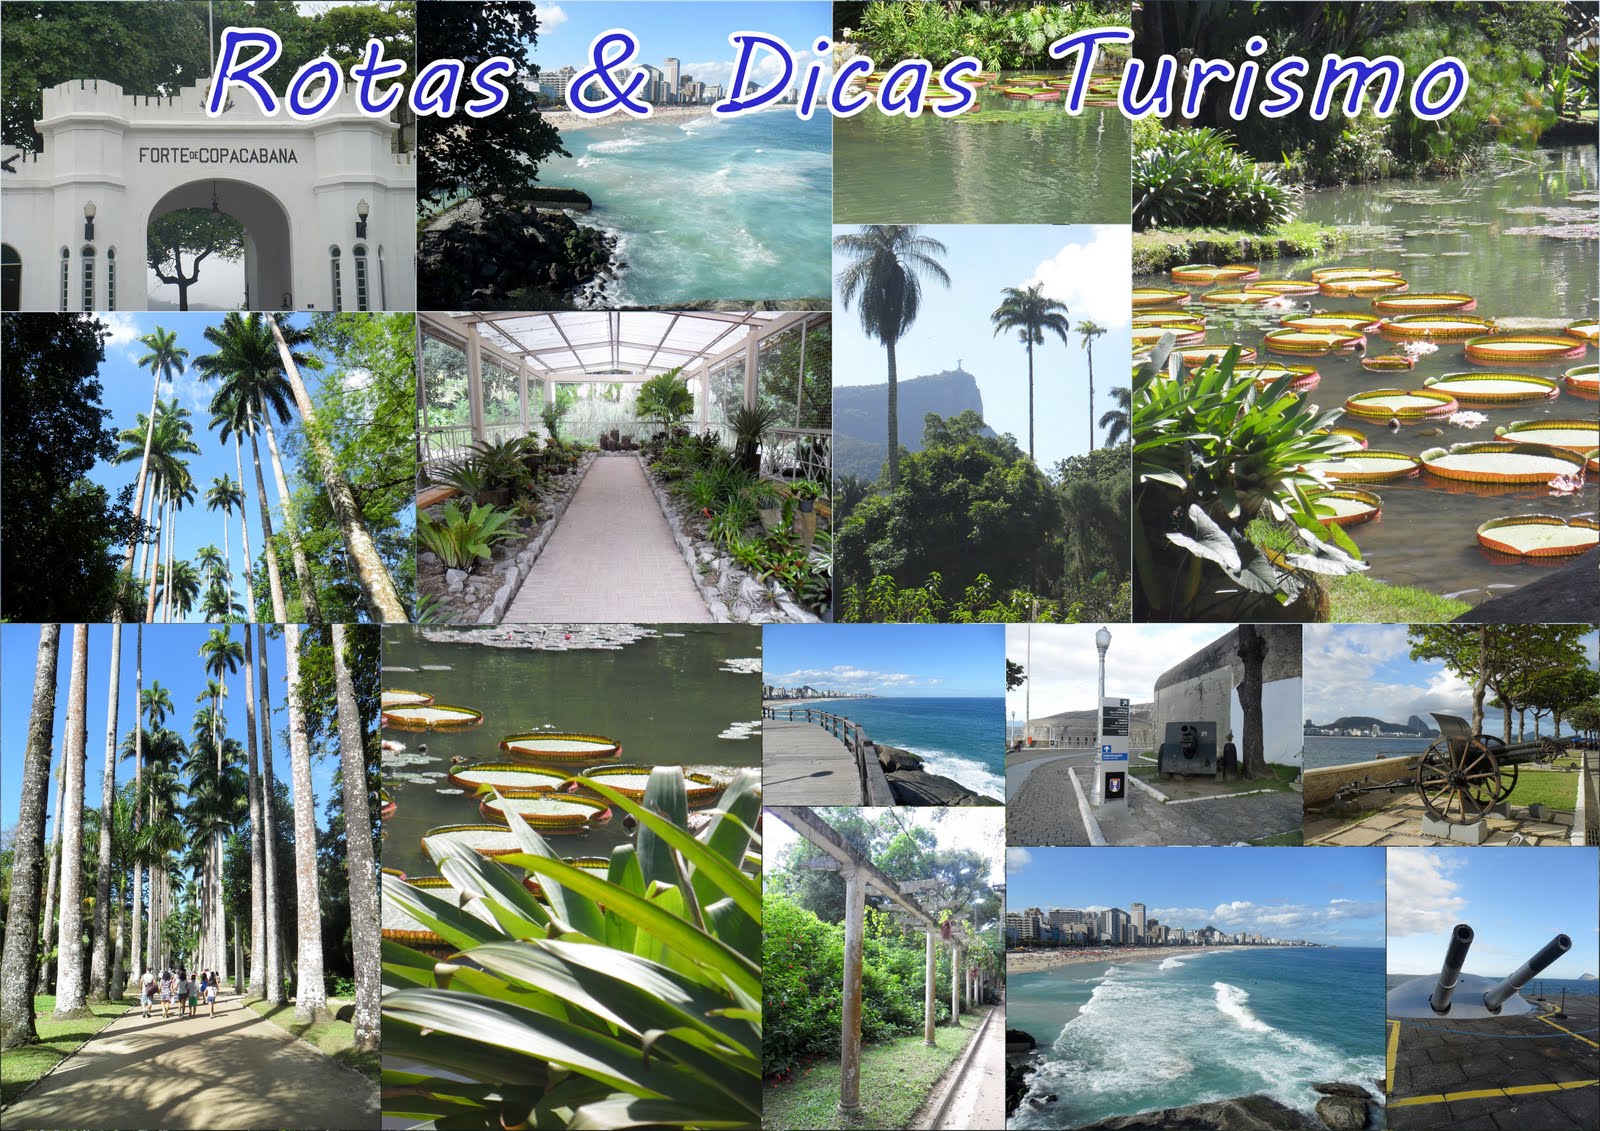 Rotas & Dicas Turismo